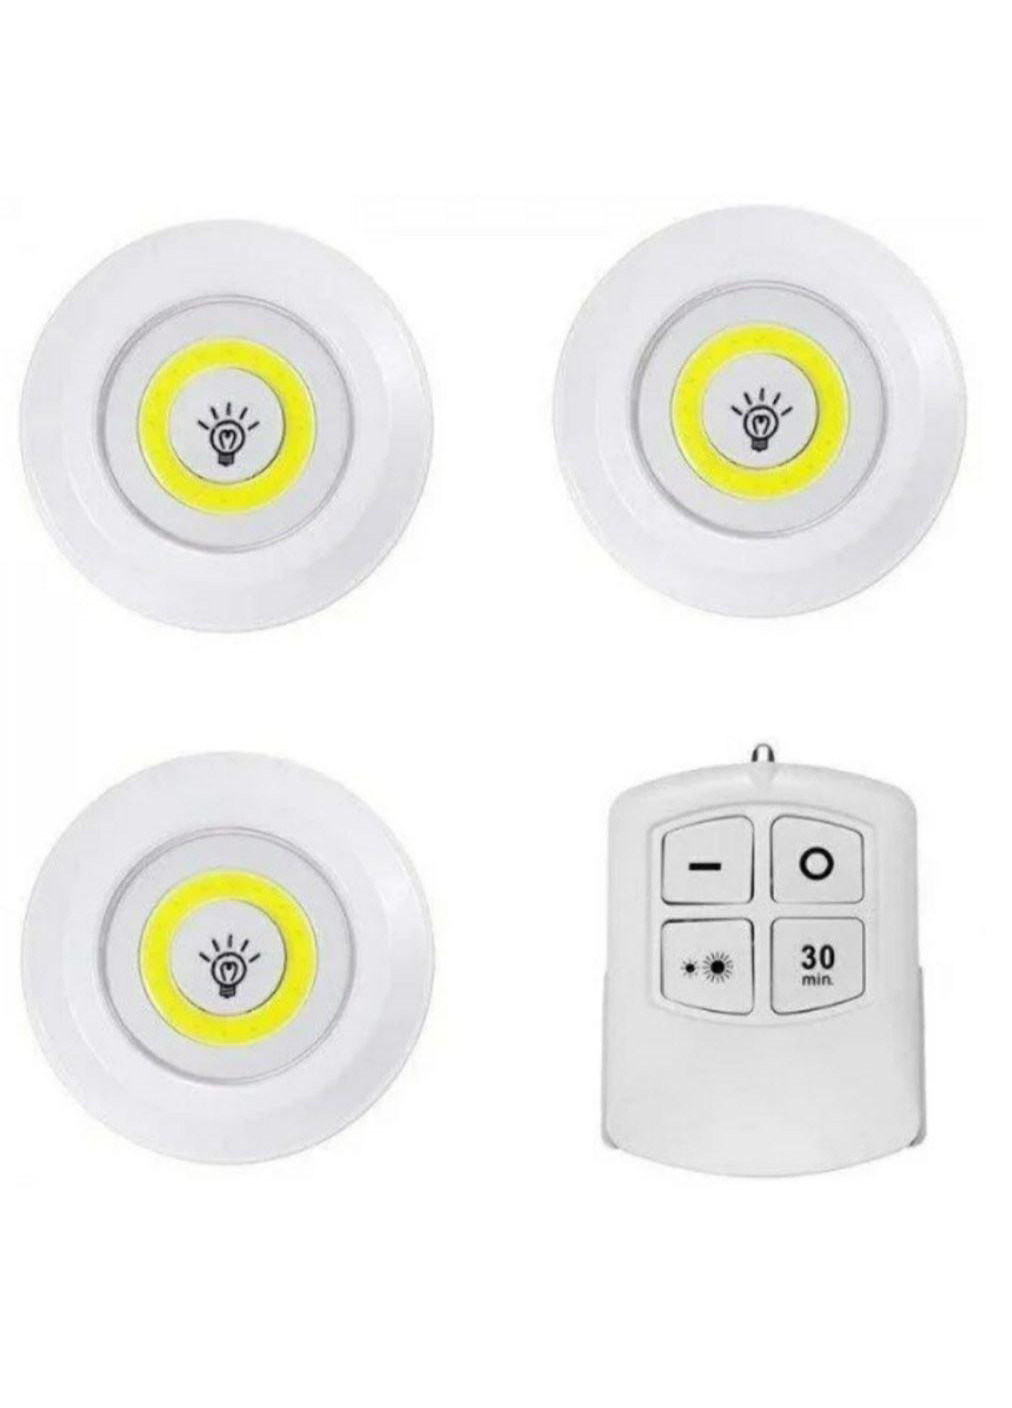 Набор ночников с пультом набор 3 шт LED light with Remote Control set No Brand (260661546)